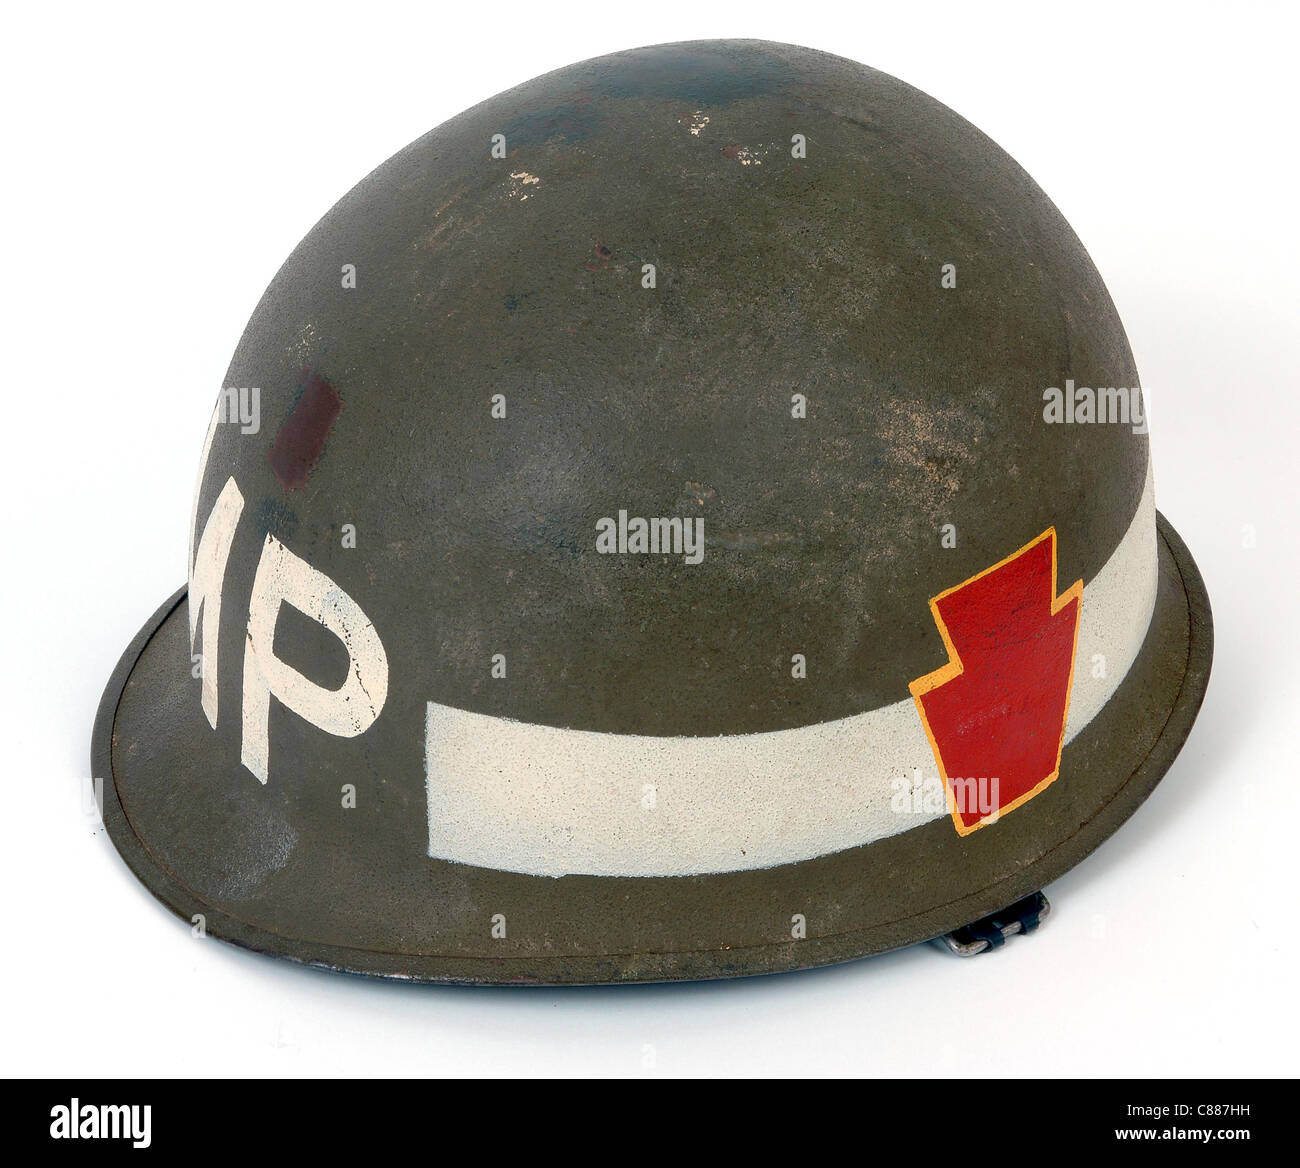 M1 Stahlhelm aus dem Vietnam-Krieg zu bekämpfen. Amerikanische militärische Polizei, 28. Infanterie-Division-Logo an der Seite. Stockfoto